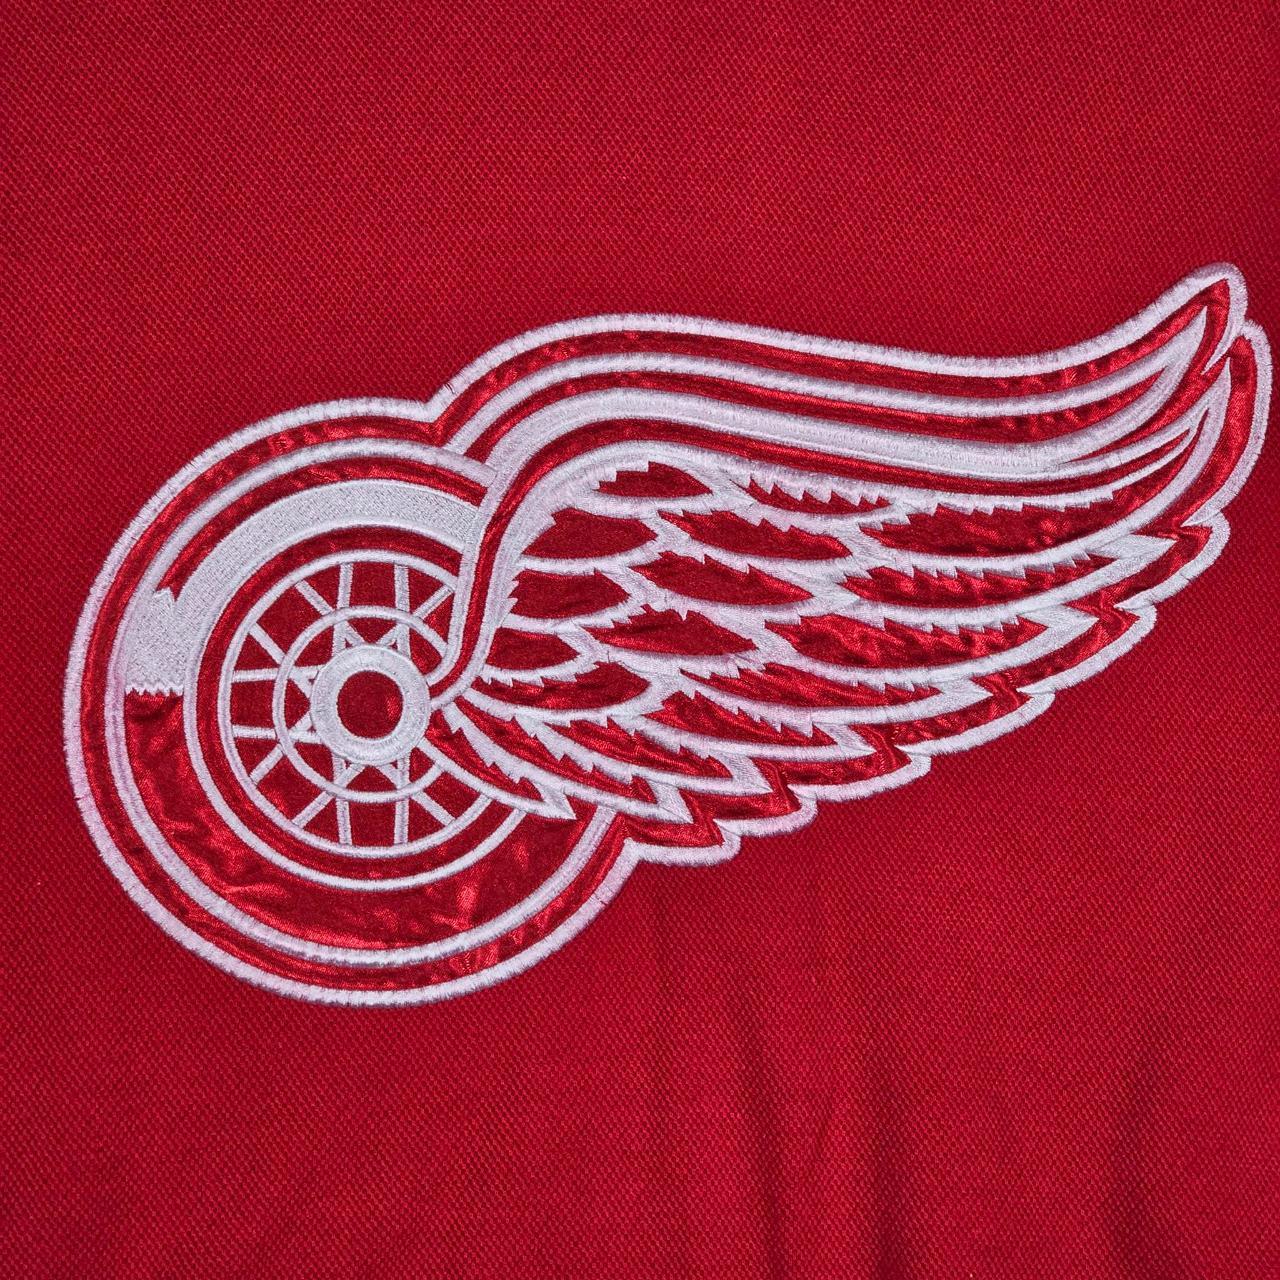 Vintage 90s Detroit Red Wings Sweatshirt XL PLEASE - Depop